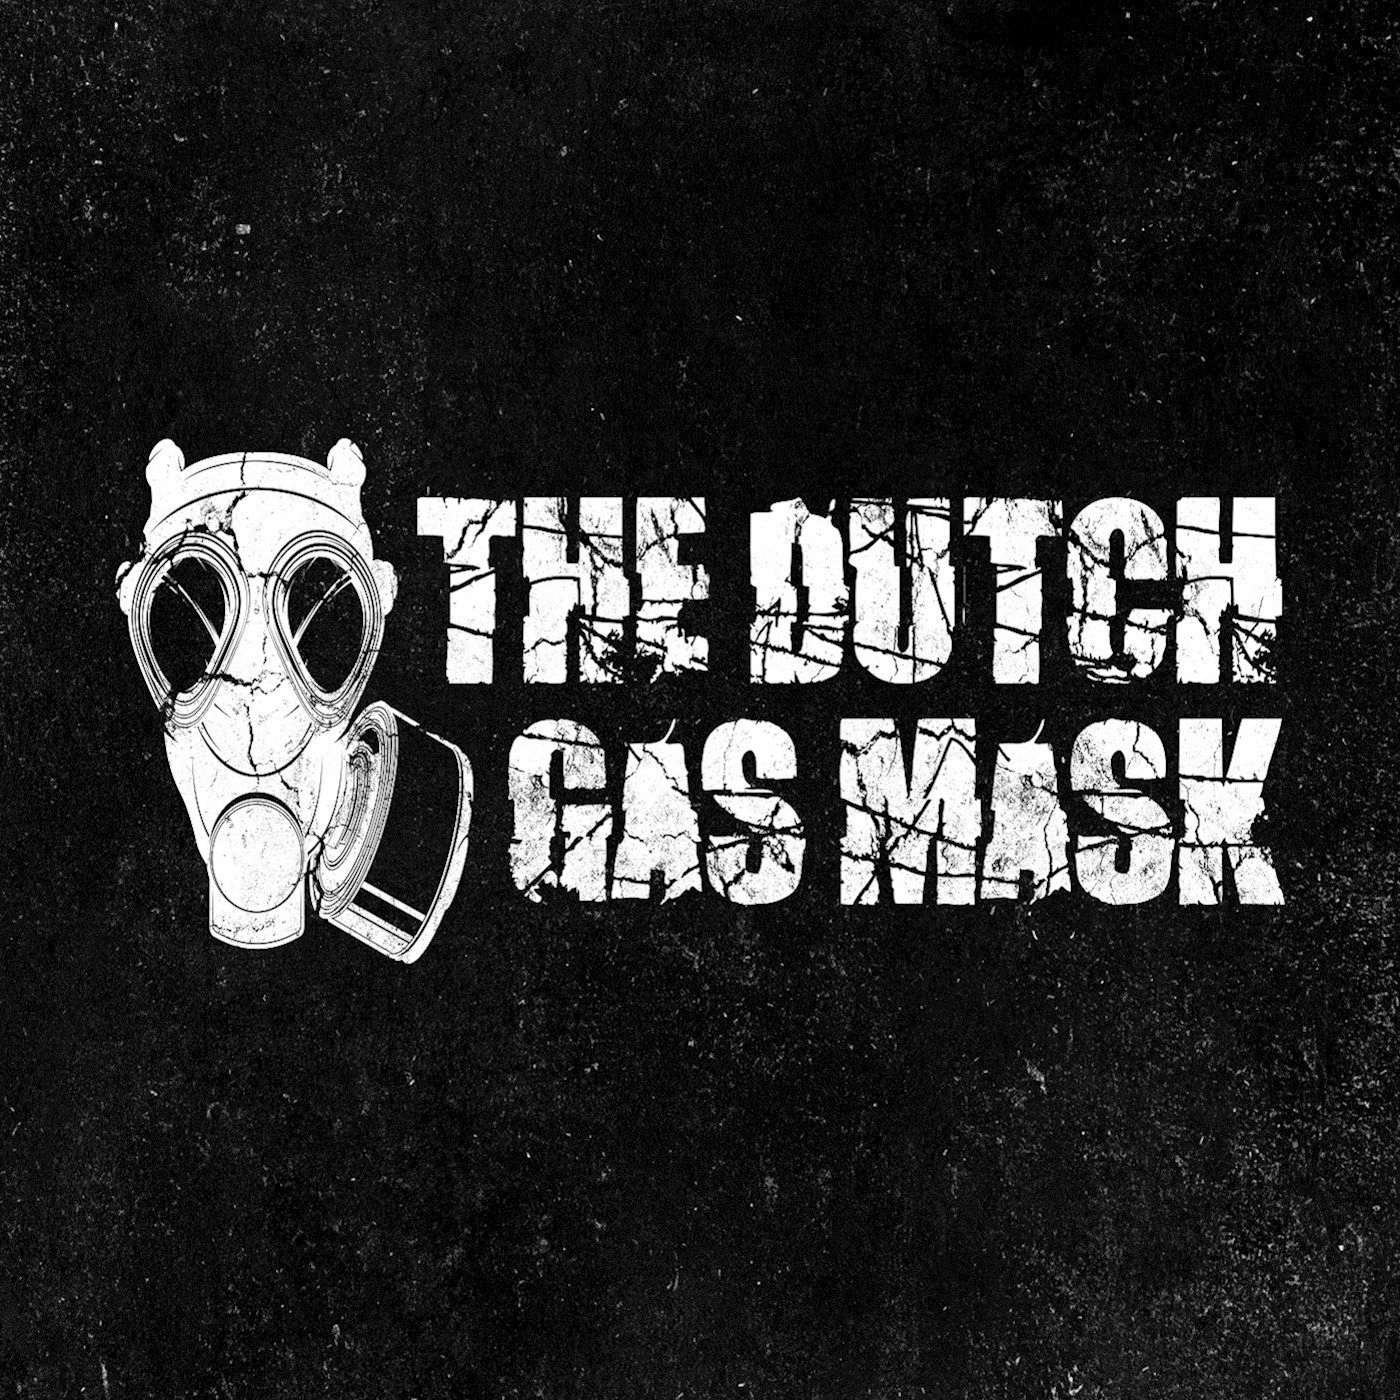 The Dutch Gas Mask